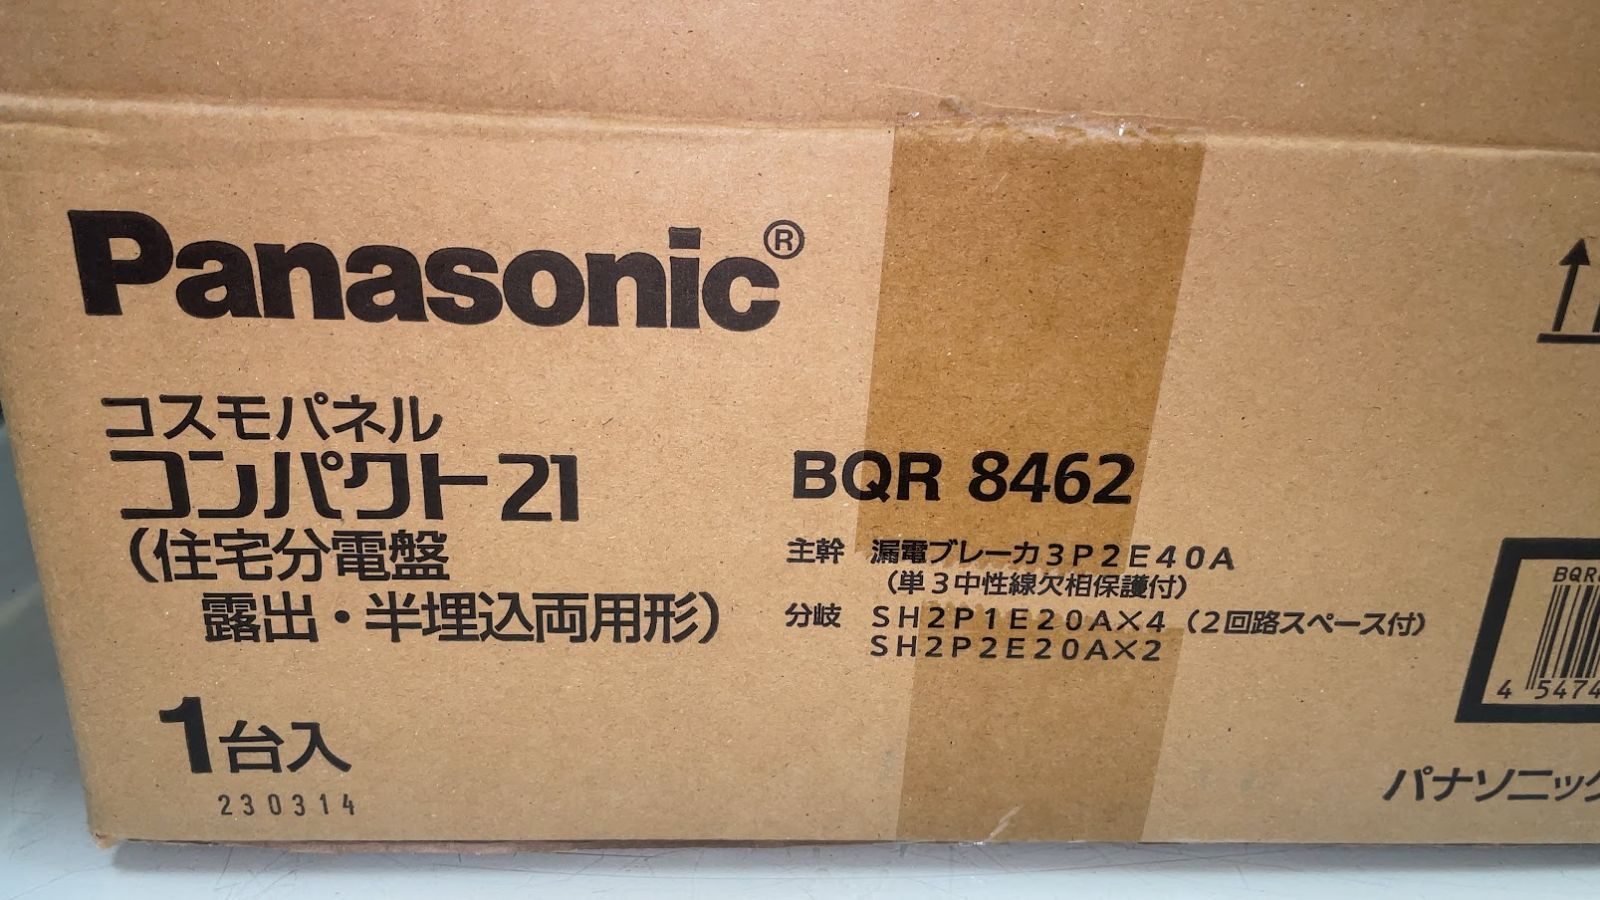 パナソニック 分電盤 BQR8462 コスモパネルコンパクト21 新品未使用